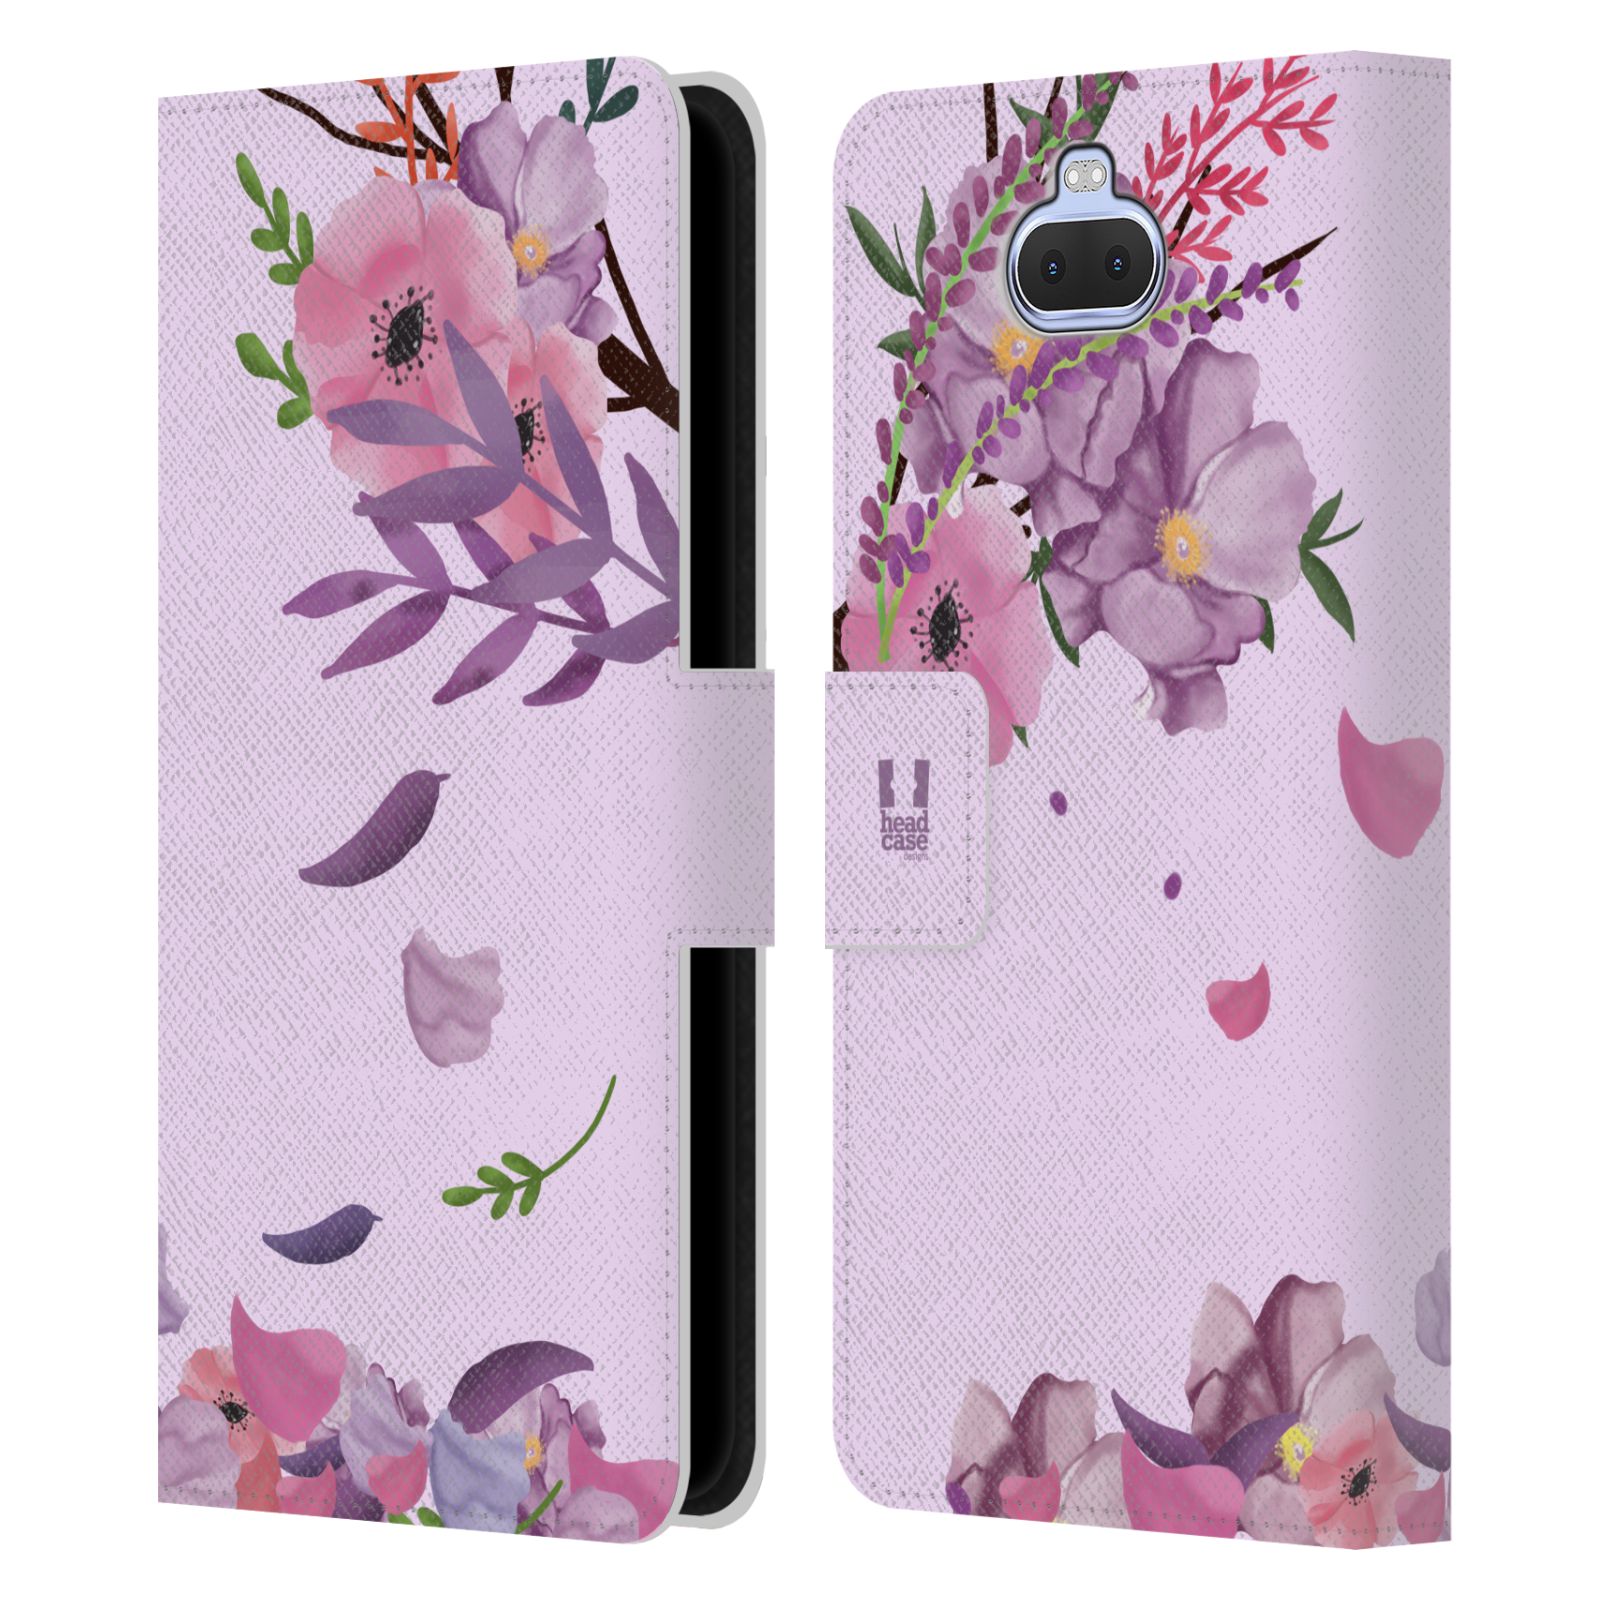 Pouzdro na mobil Sony Xperia 10 / Xperia XA3  - HEAD CASE - Rozkvetlé růže a listy růžová